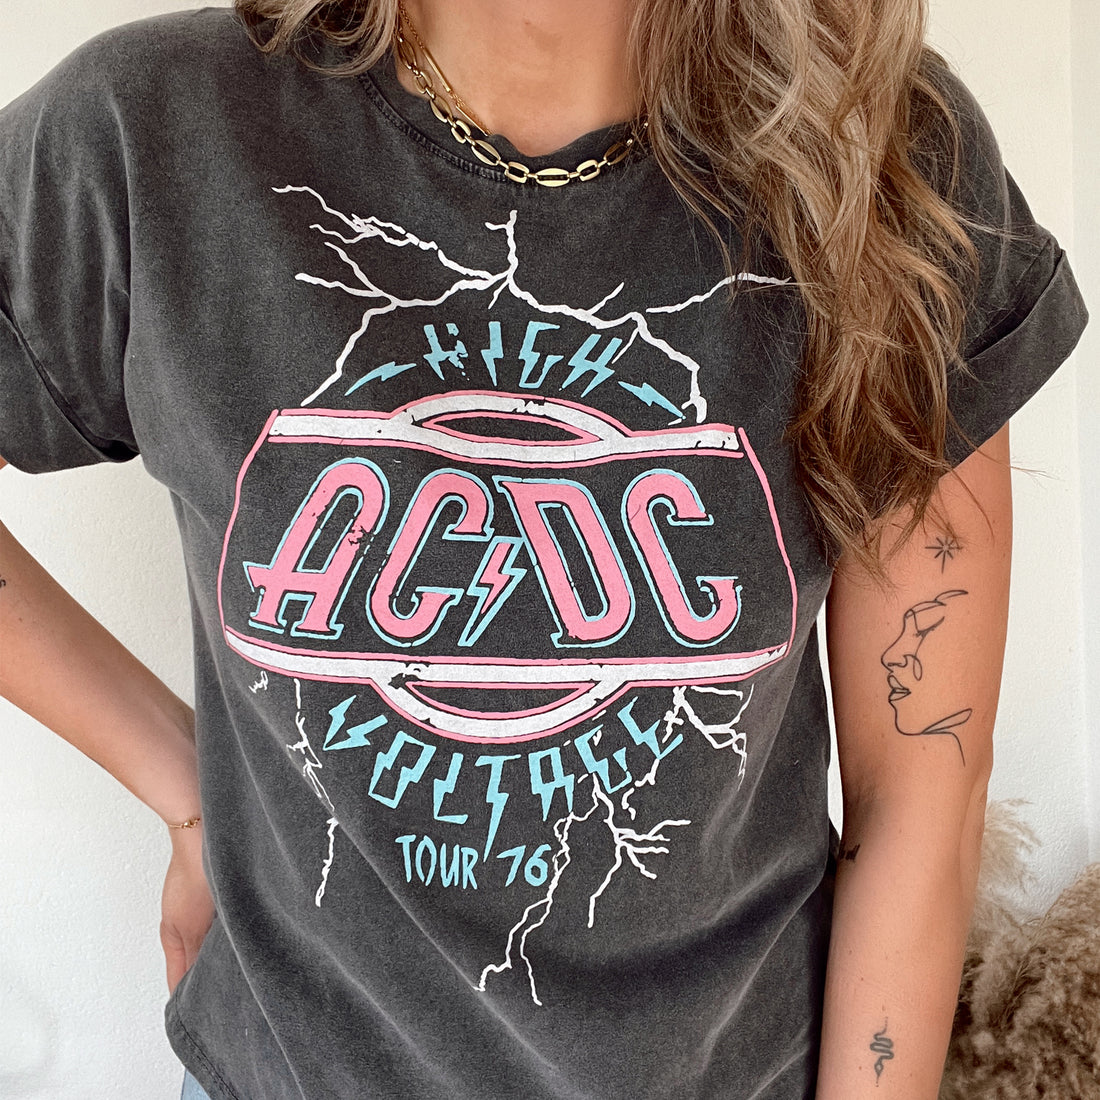 Voltage AC/DC tee washed black. Zwart gewassen oversized t-shirt met AC/DC print. Het t-shirt heeft een oversized fit en is te dragen t/m maat XL. Materiaal van het t-shirt is 100% katoen.